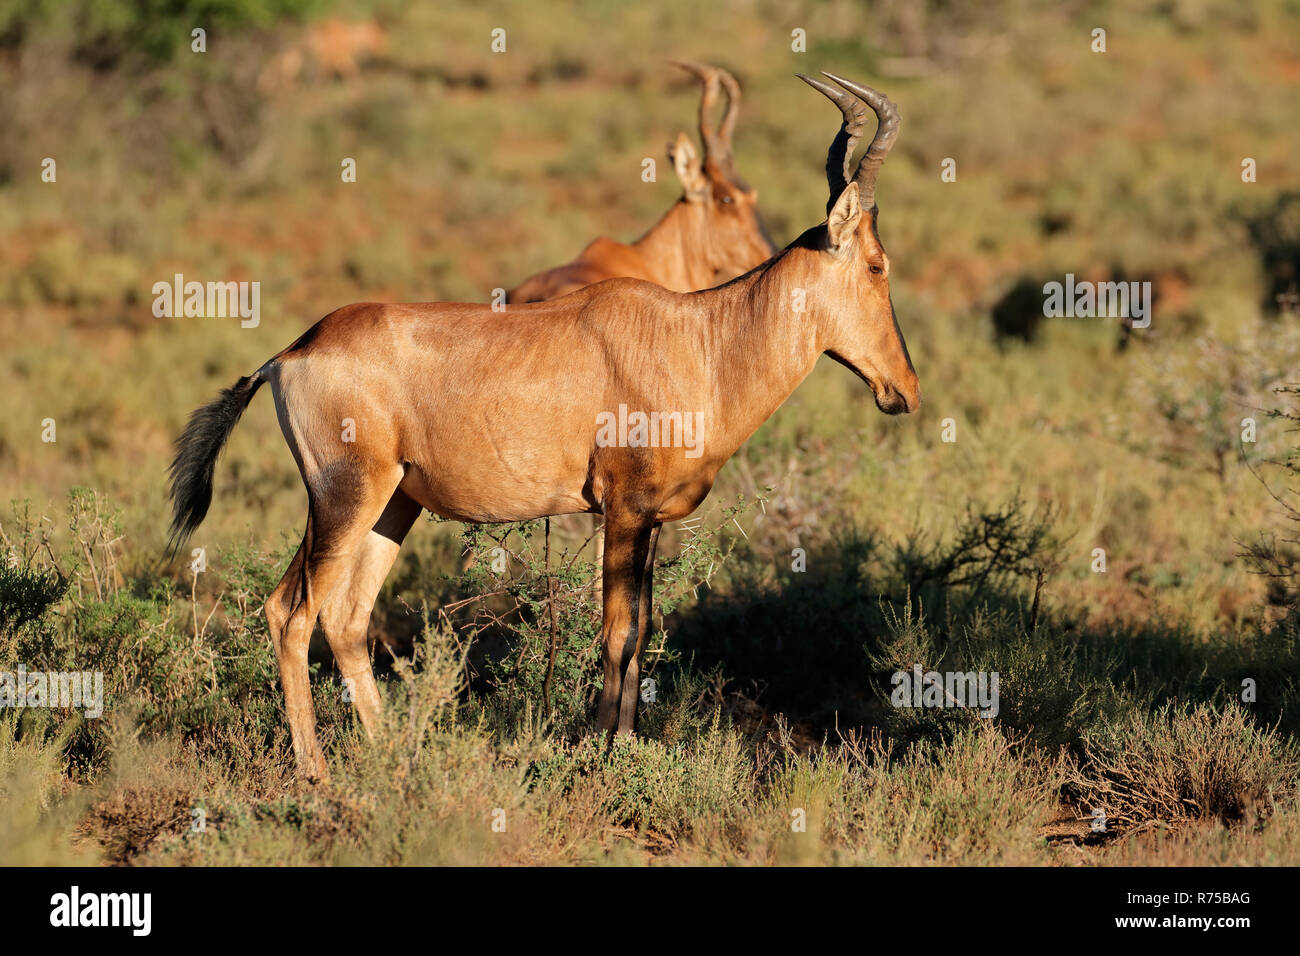 Red hartebeest antelope Stock Photo